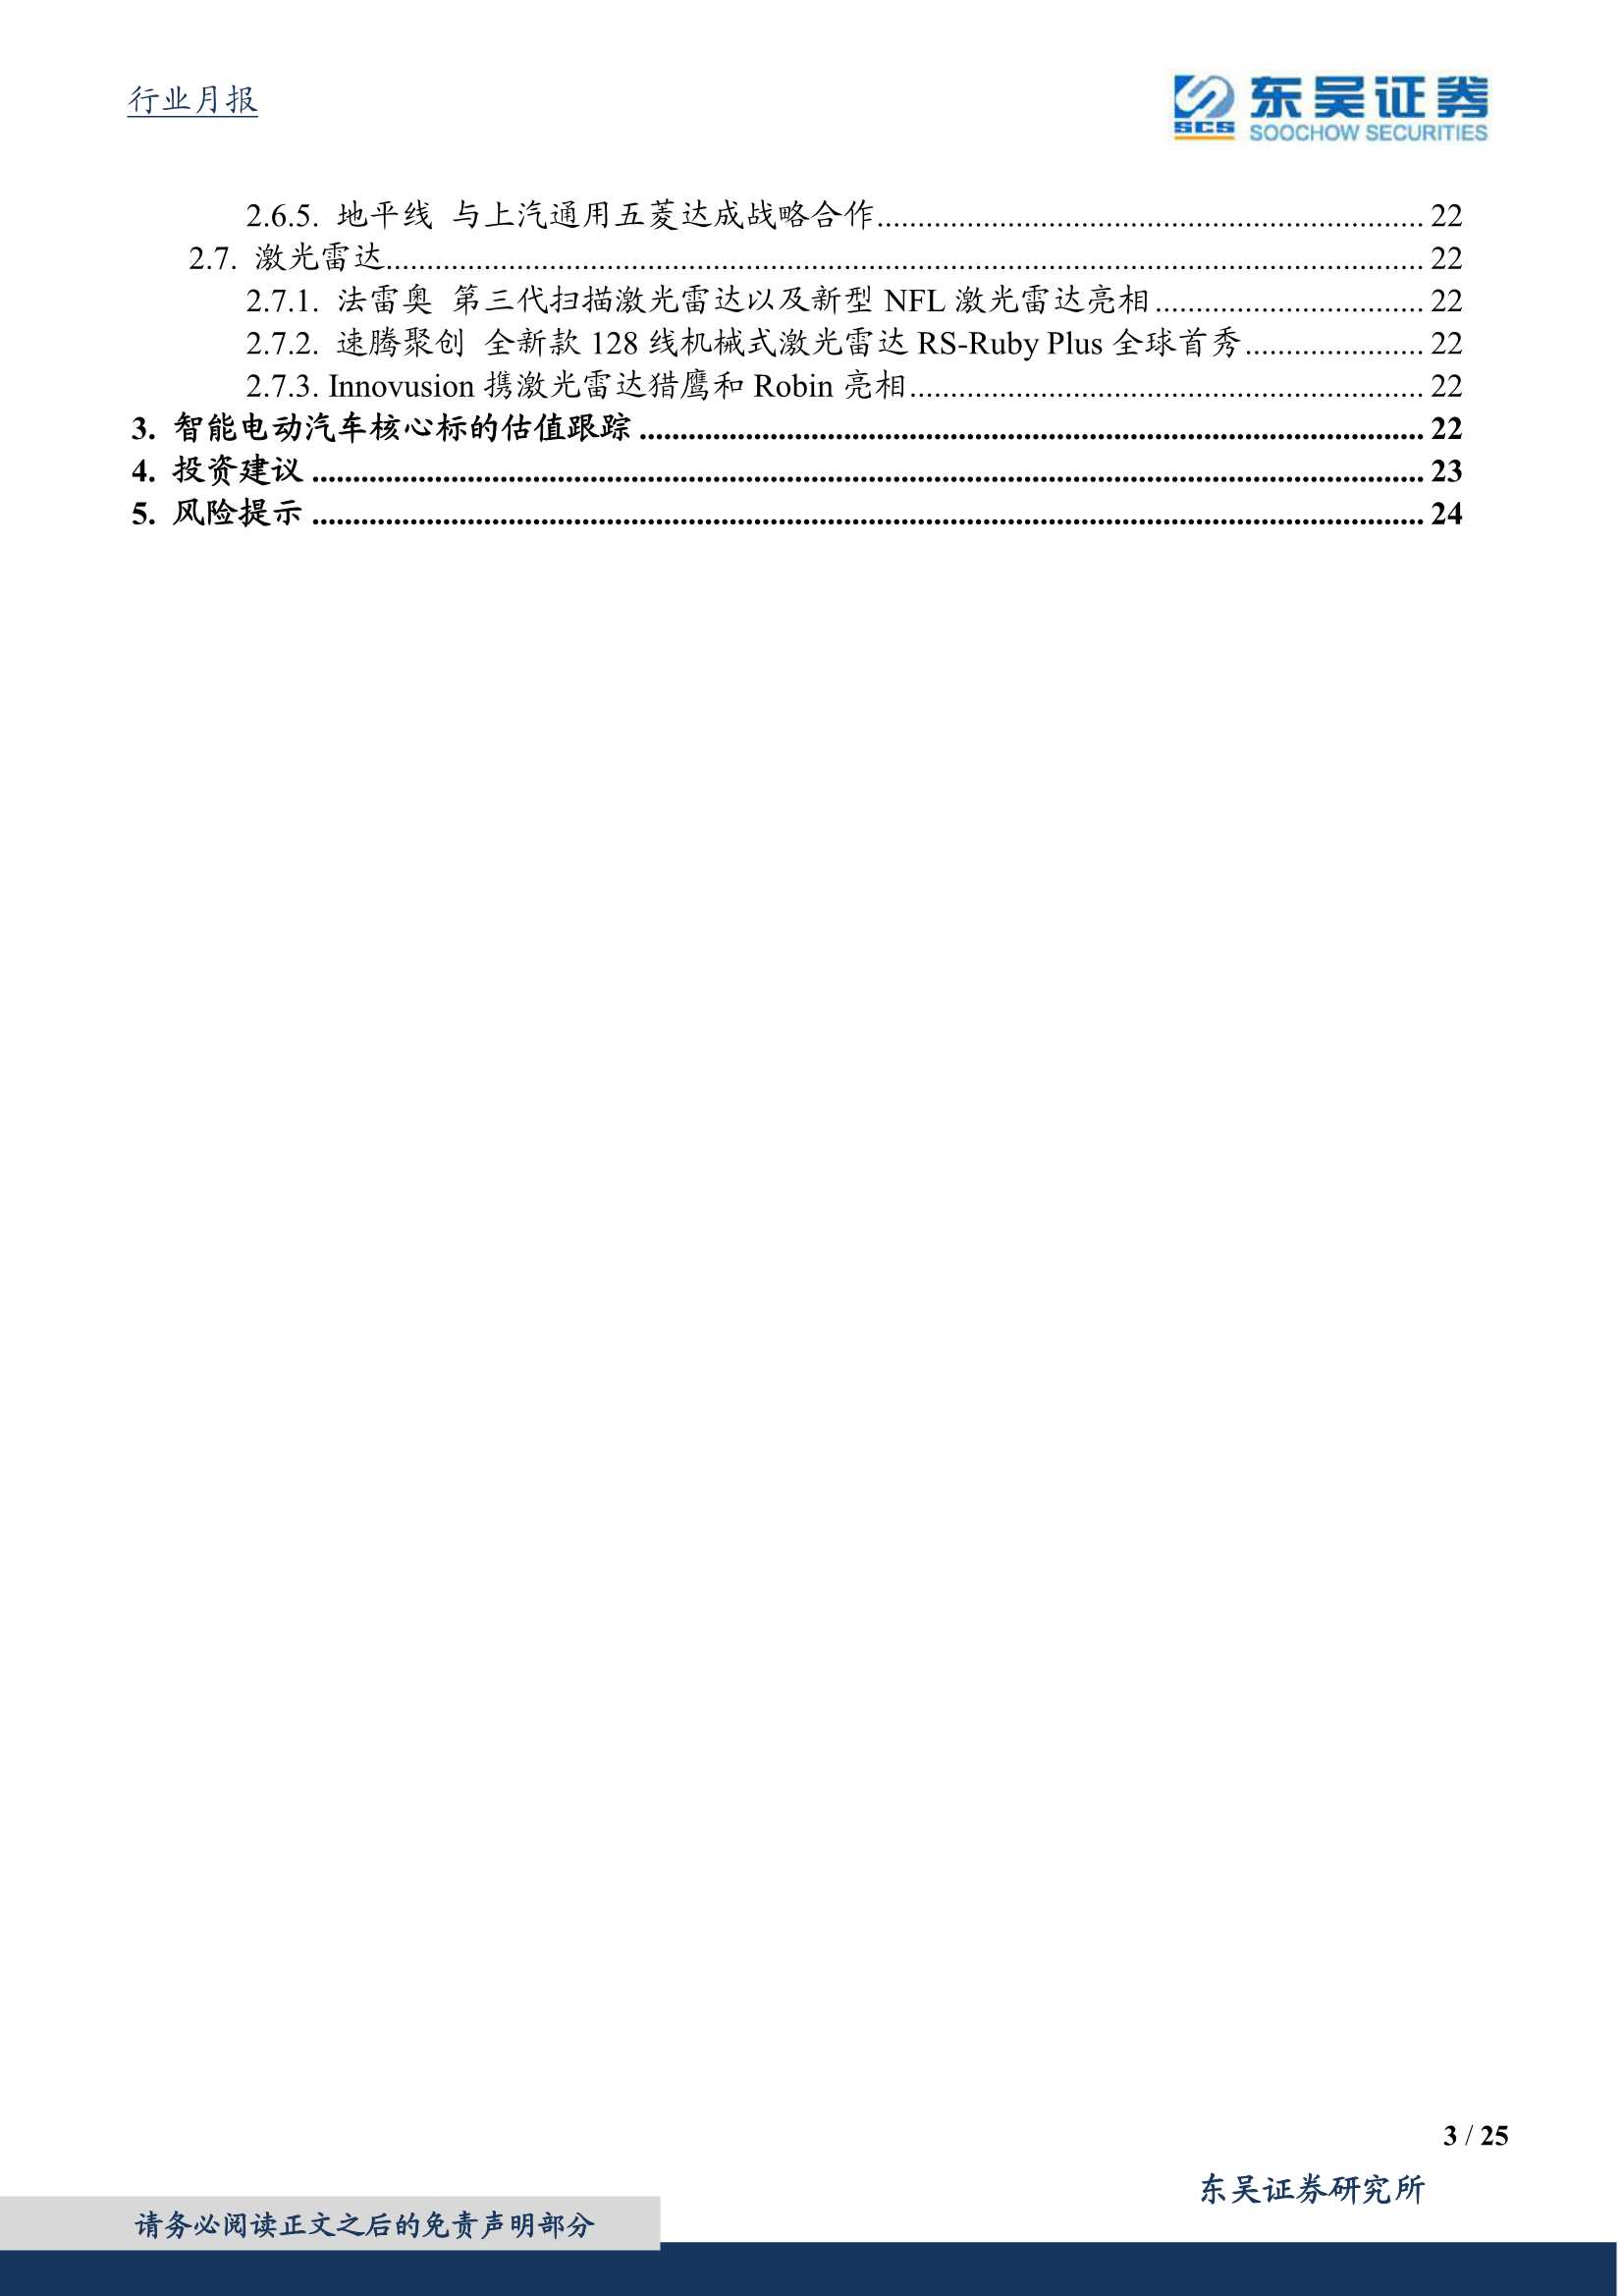 东吴证券-汽车行业智能电动汽车一月策略：车企芯片布局加速，看好自主崛起-20220117-25页